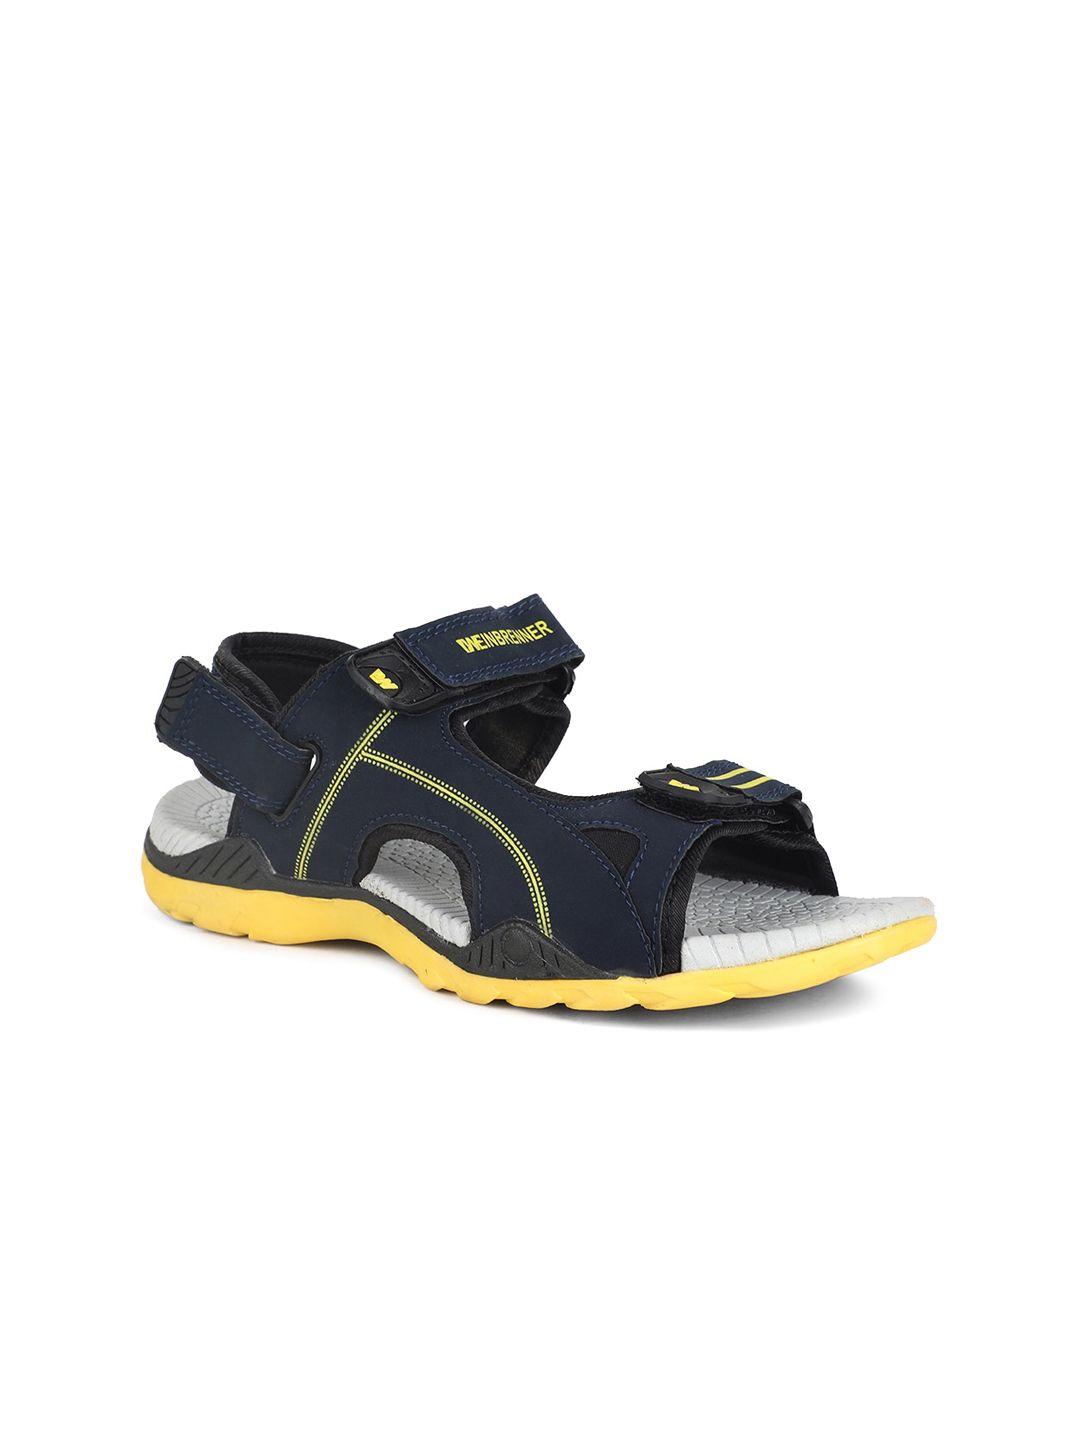 bata boys navy blue & grey sports sandals